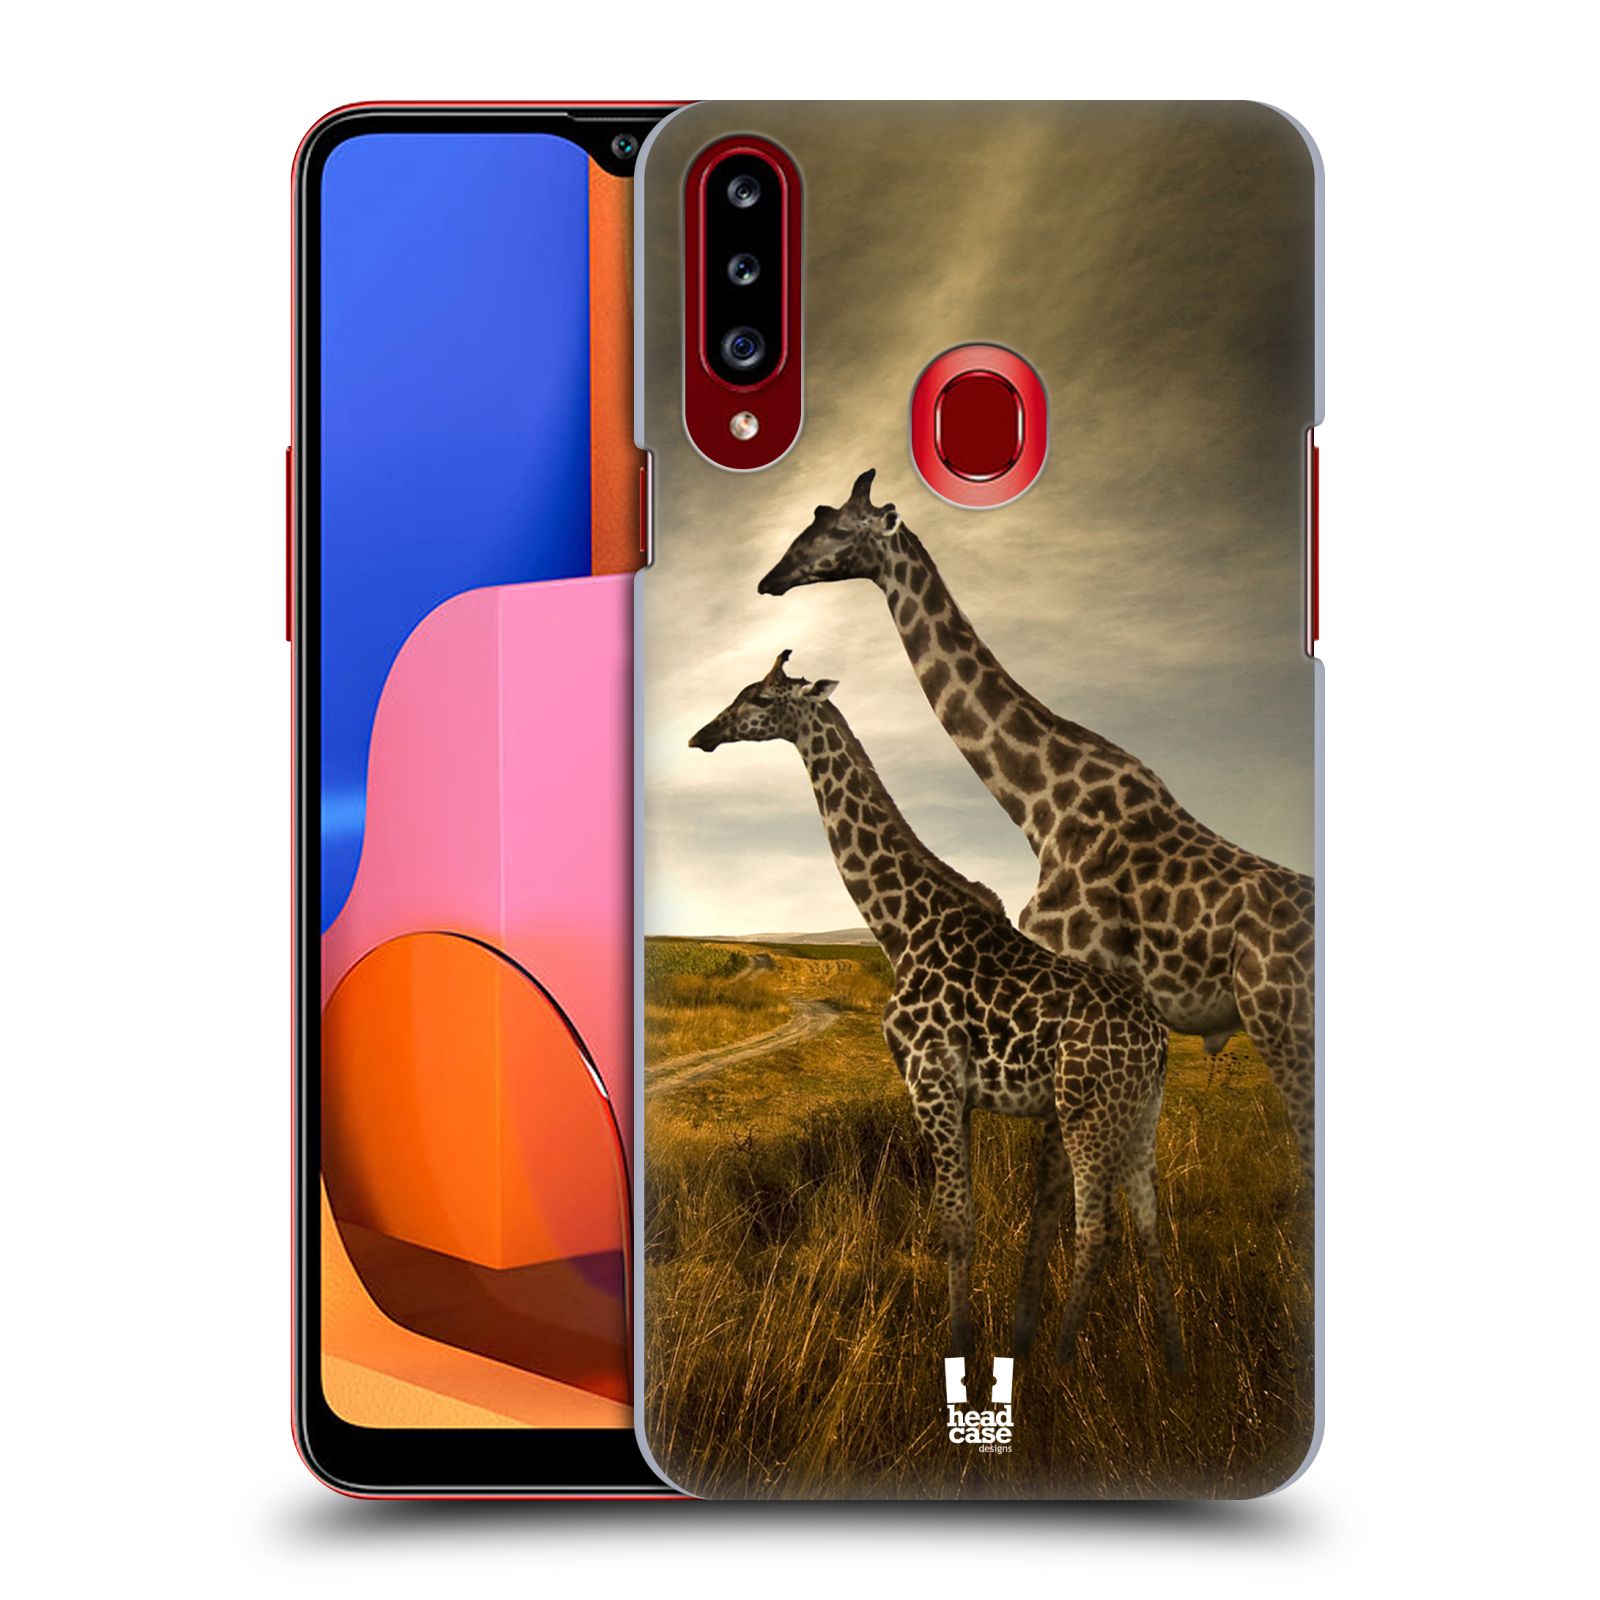 Zadní obal pro mobil Samsung Galaxy A20s - HEAD CASE - Svět zvířat žirafy